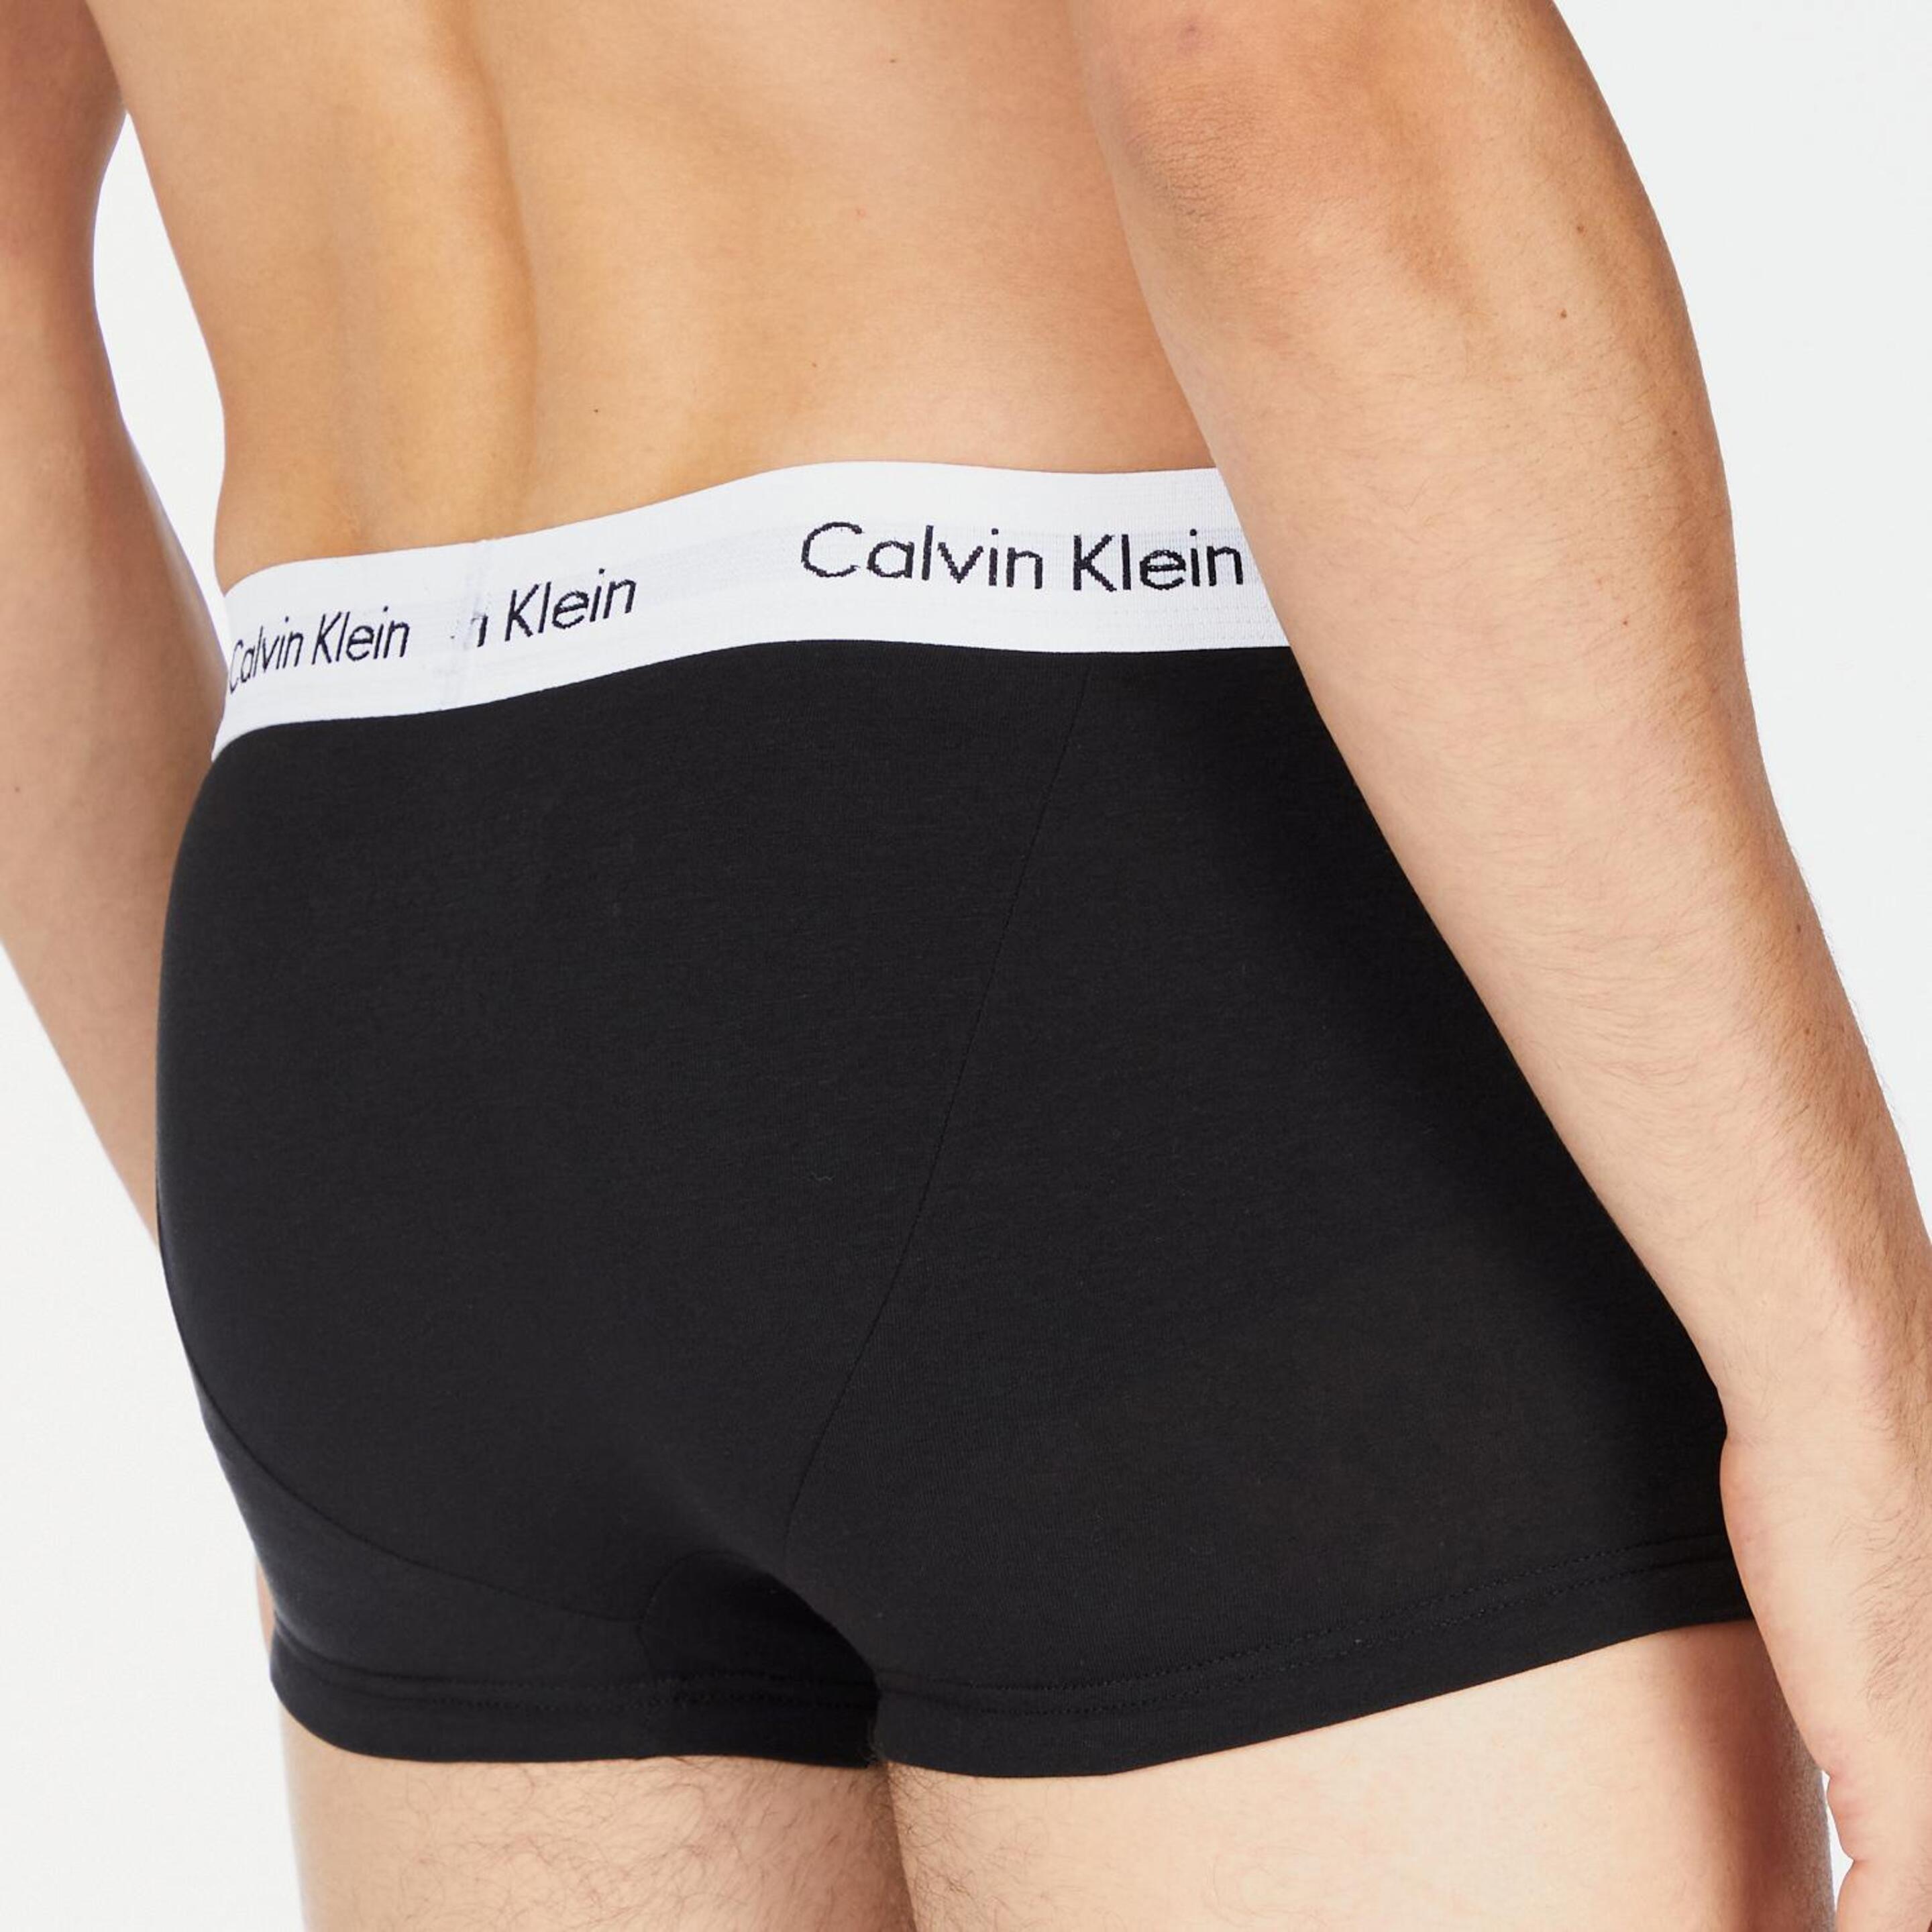 Calzoncillos Calvin Klein - Negro - Bóxer Hombre  MKP